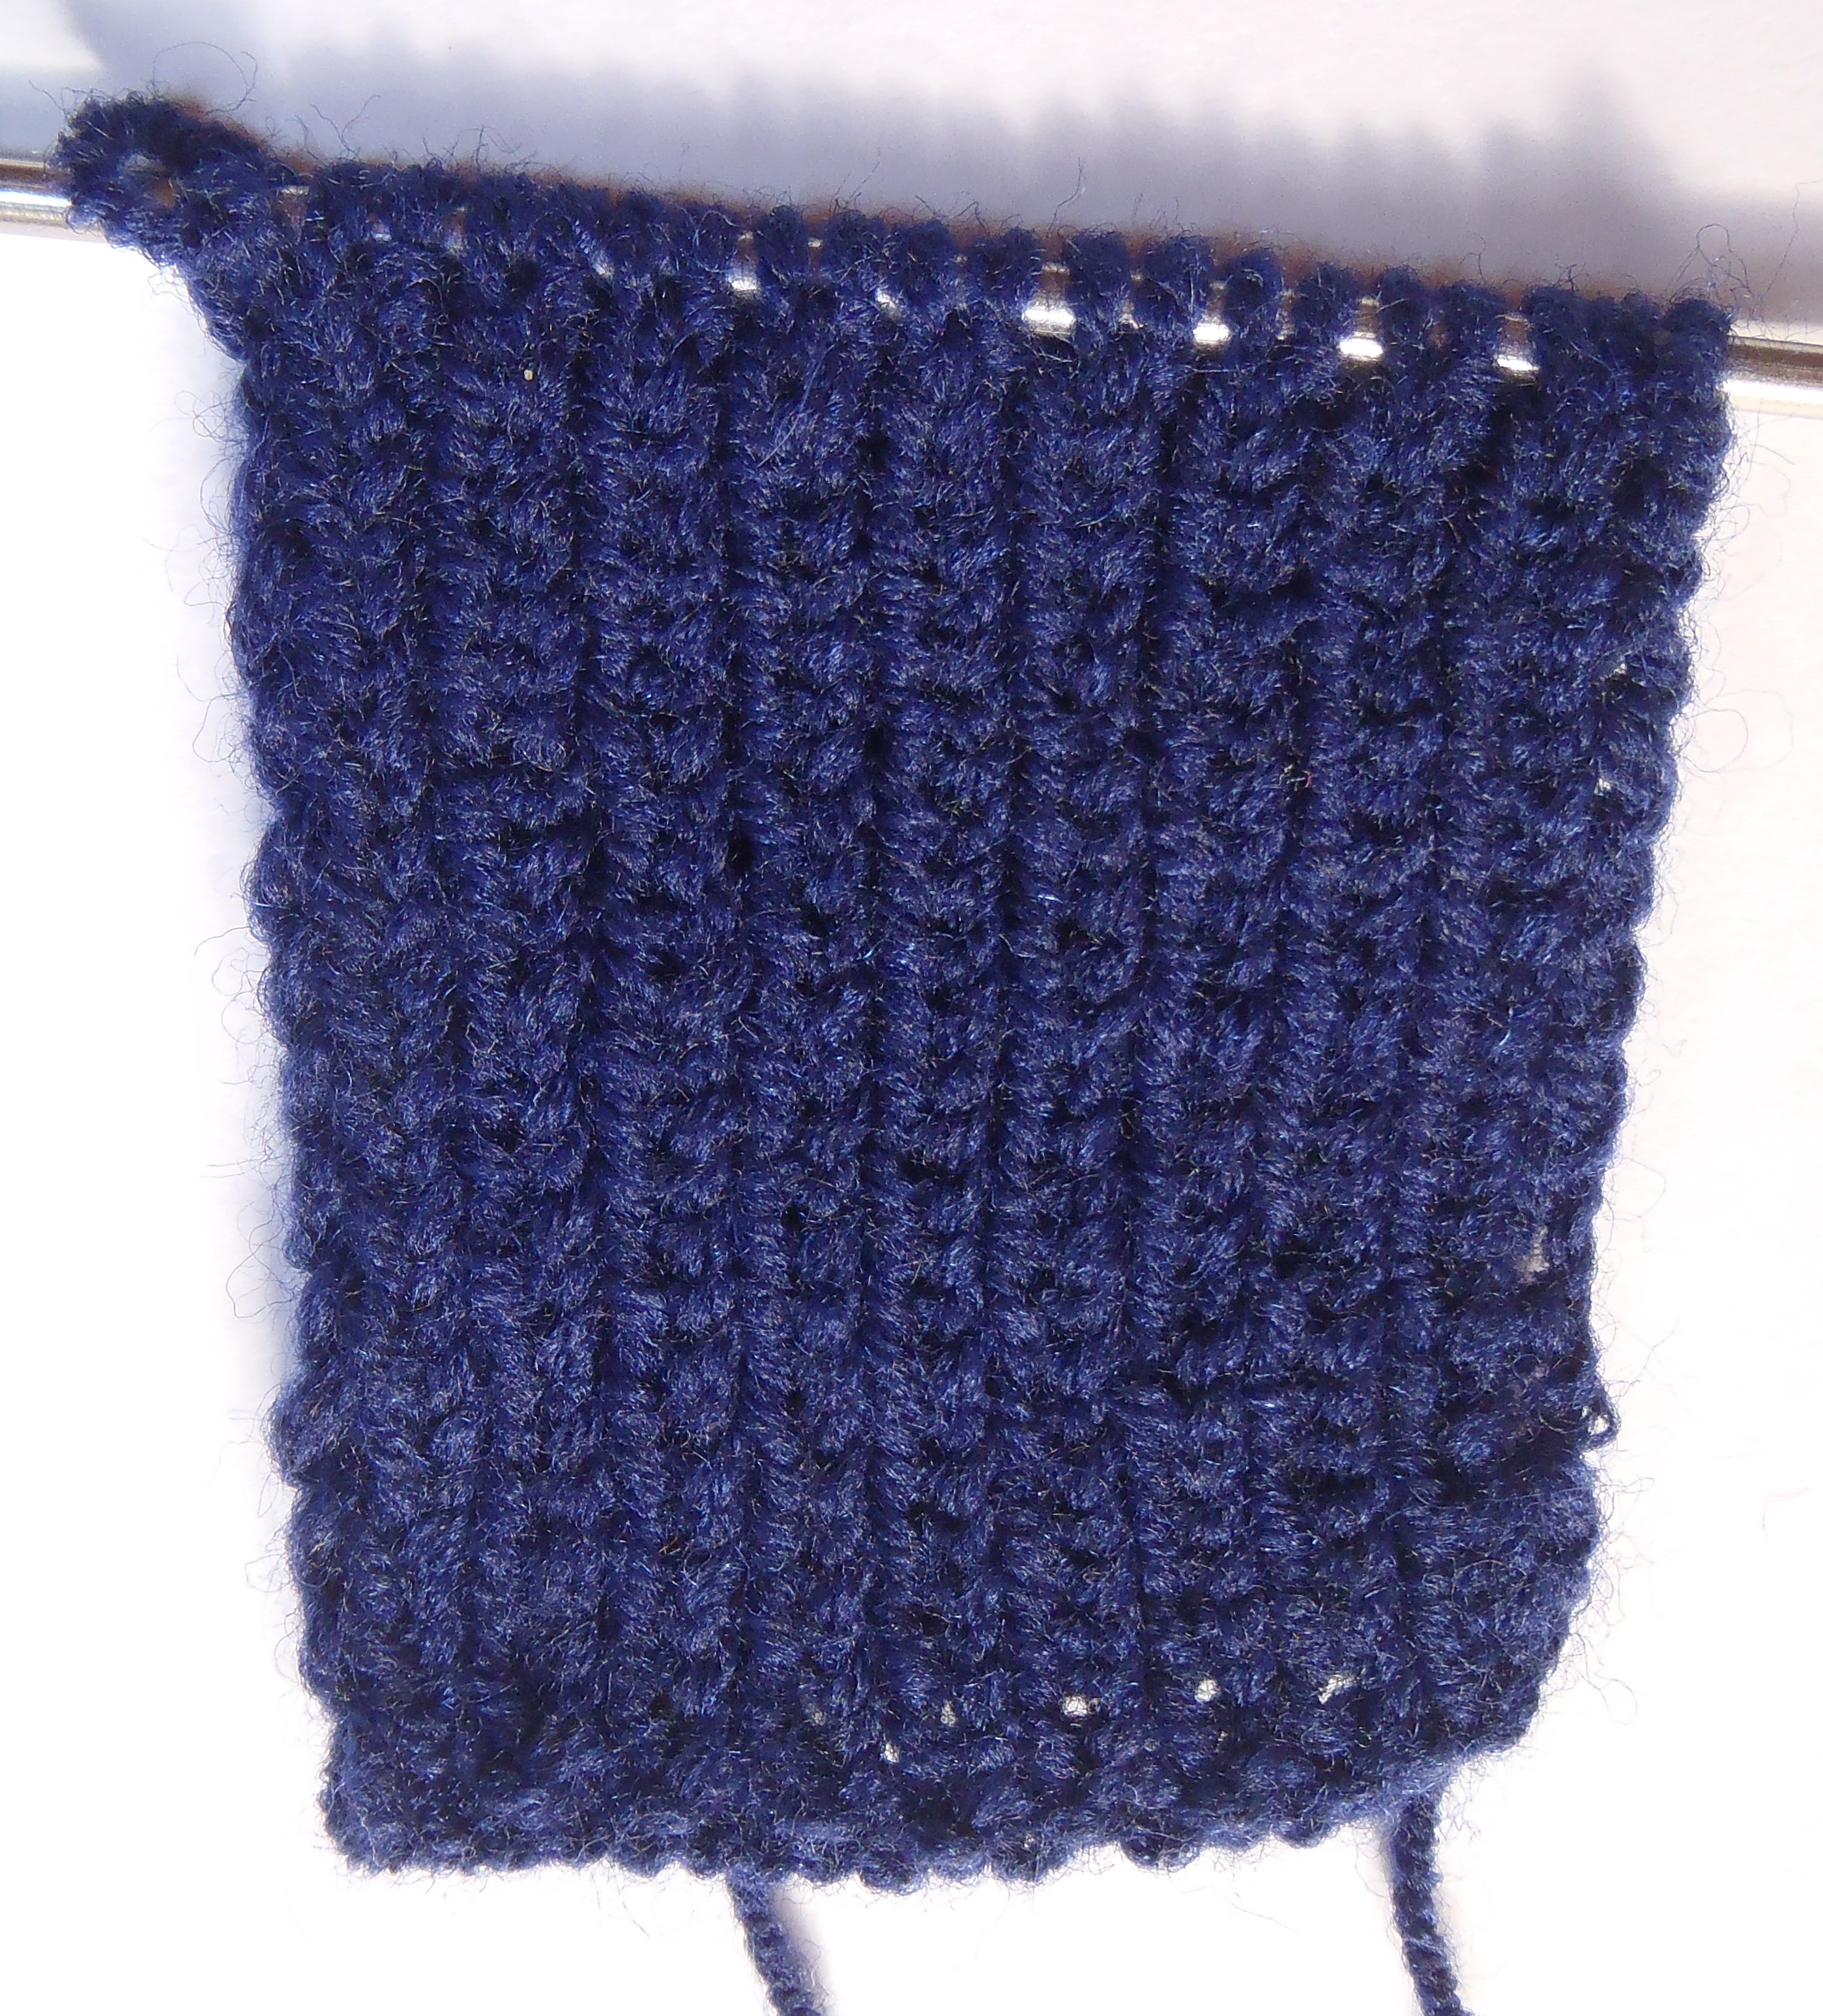 2. Вязка в рубчик или платочное вязание